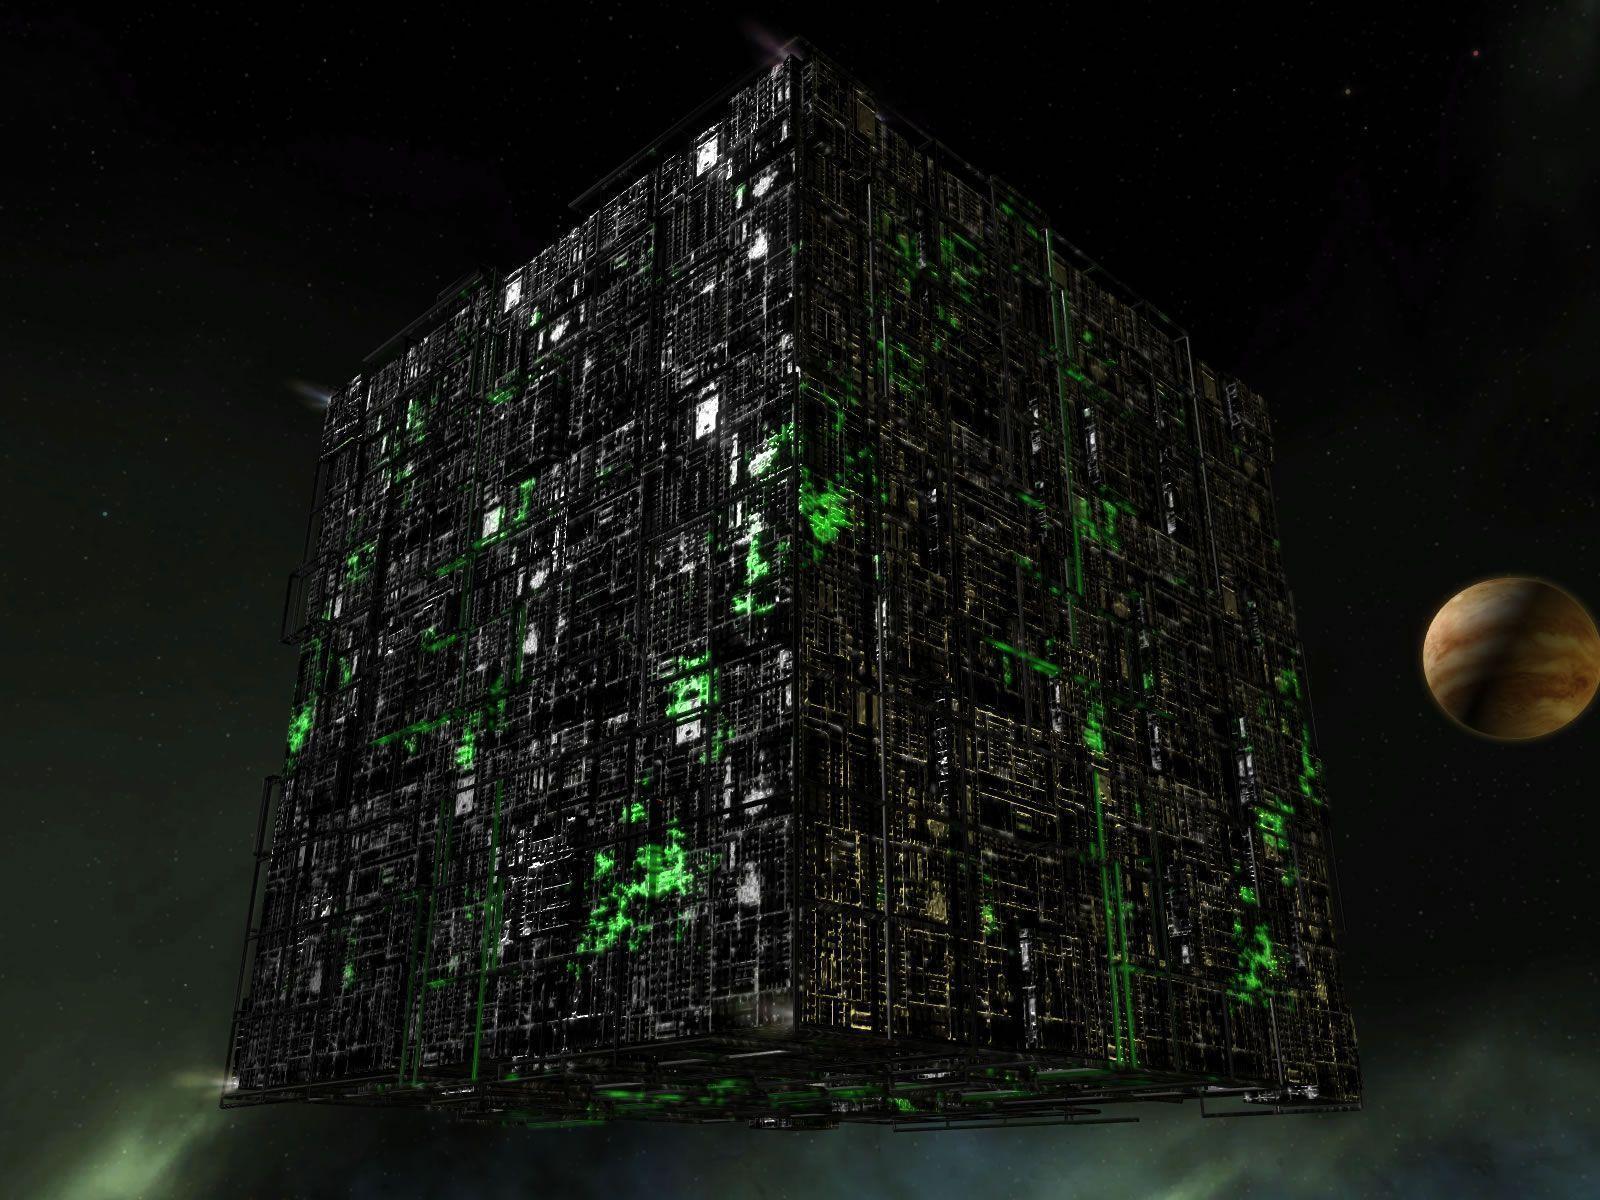 36 Borg Cube Wallpaper  WallpaperSafari